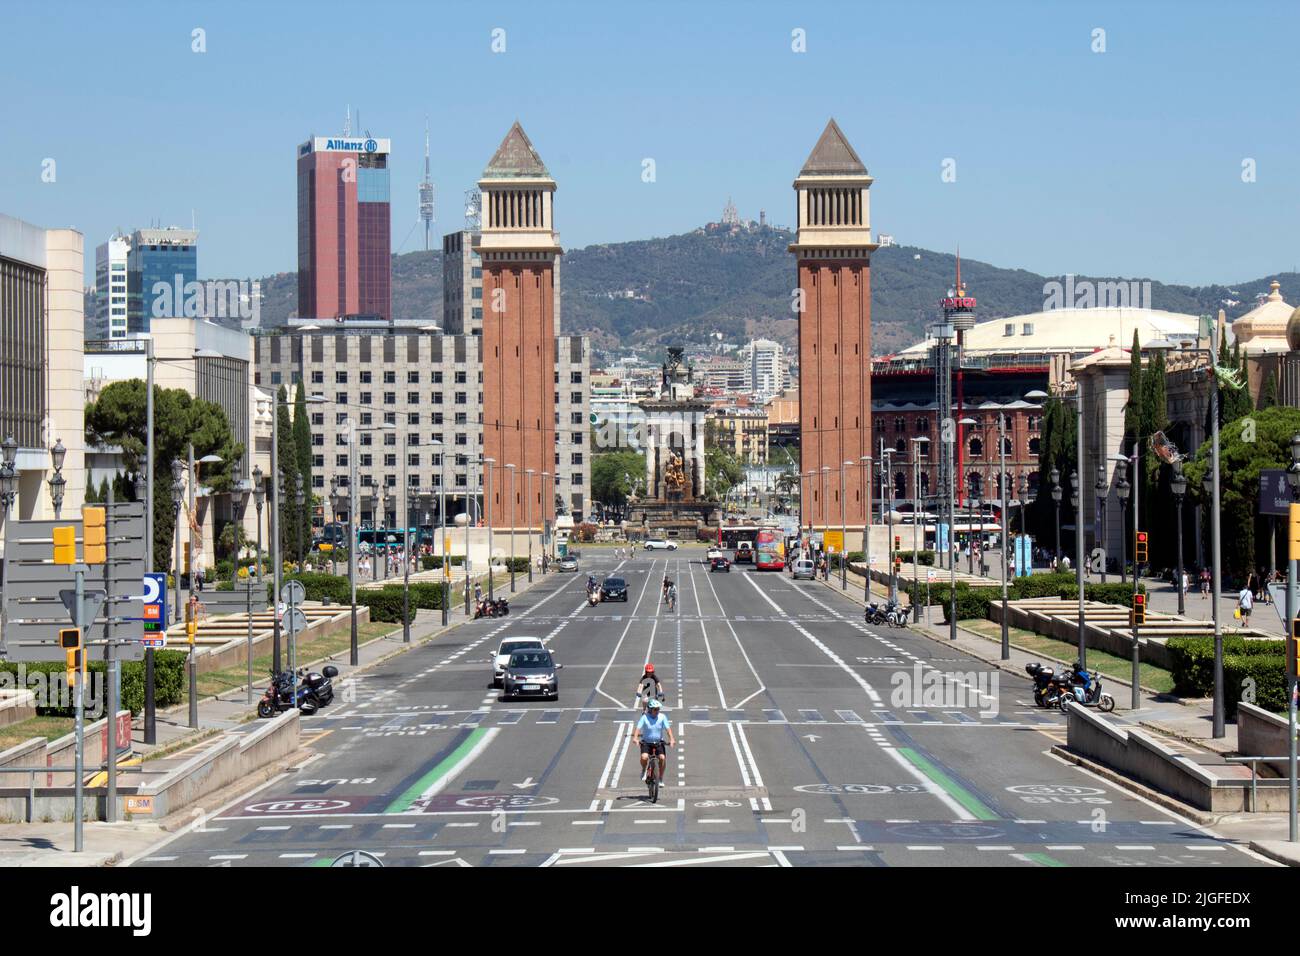 Vista sulla Plaza d'Espanya, una delle piazze più importanti di Barcellona, ai piedi della collina di Montjuic, Barcellona, Catalunya Spagna Foto Stock